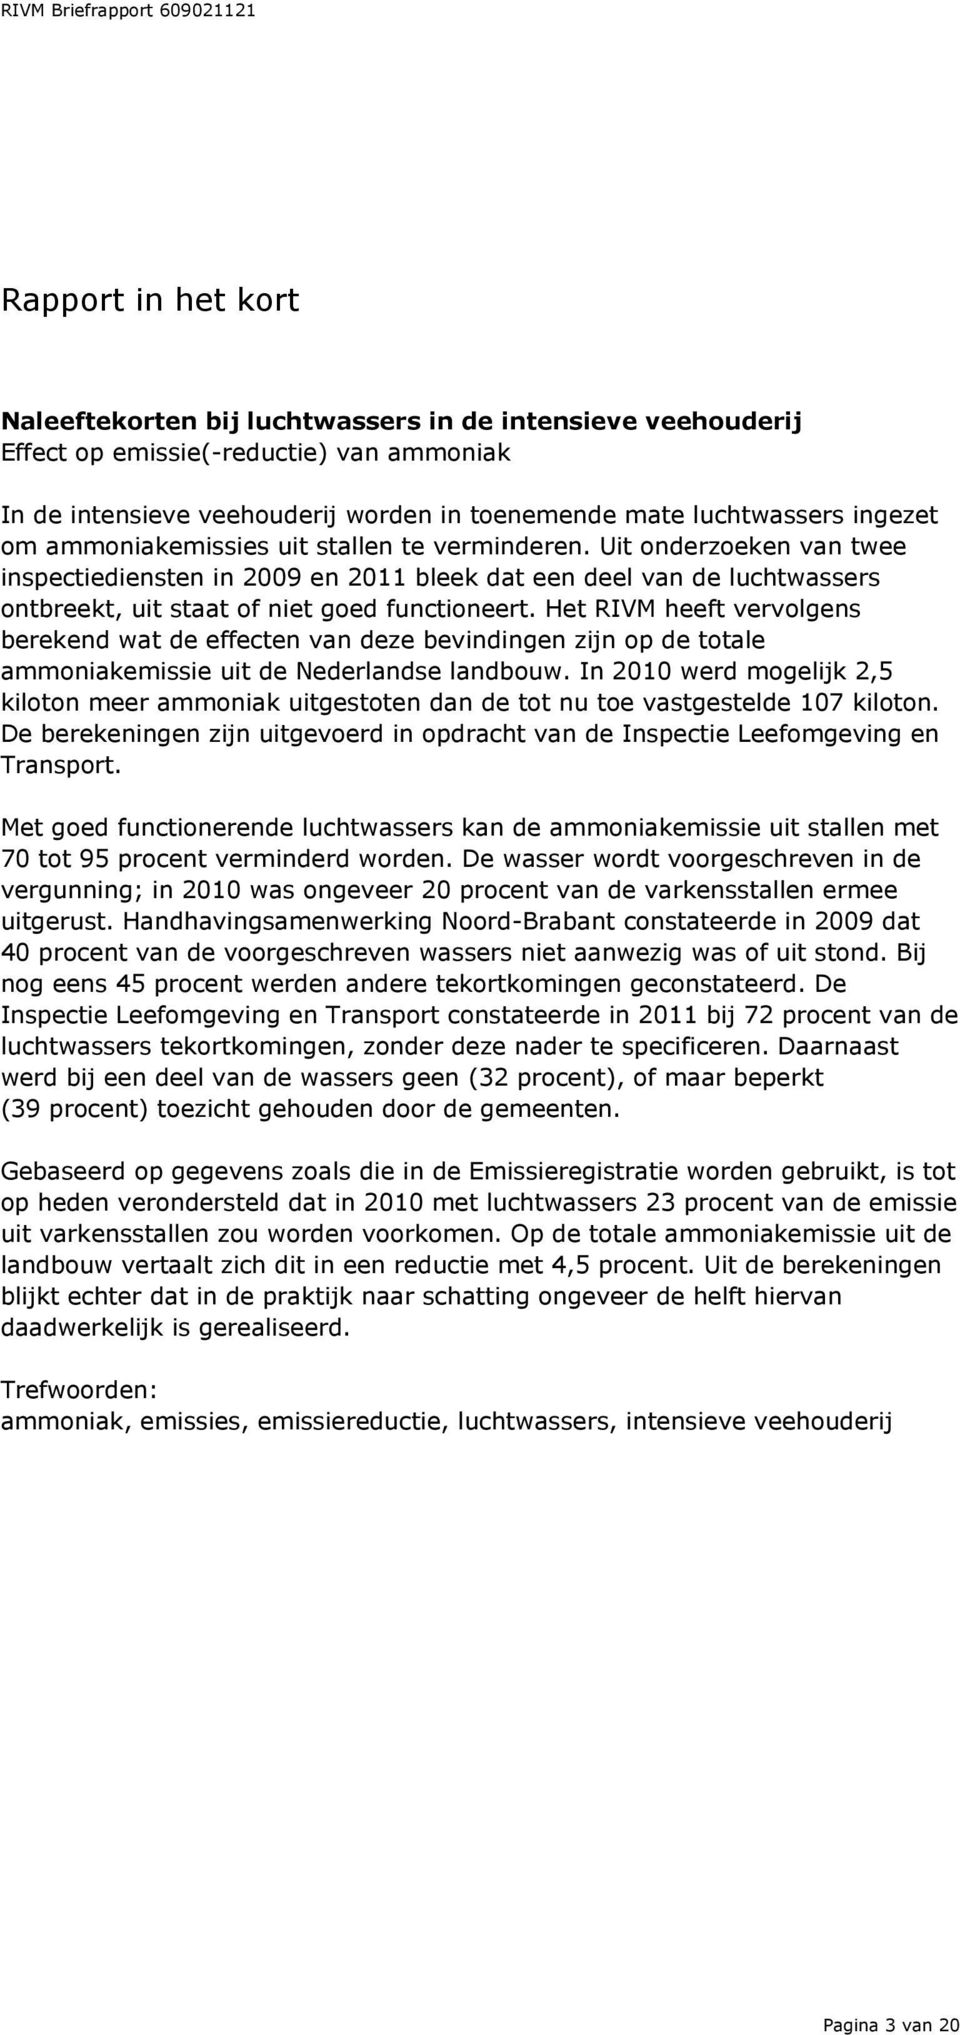 Het RIVM heeft vervolgens berekend wat de effecten van deze bevindingen zijn op de totale ammoniakemissie uit de Nederlandse landbouw.